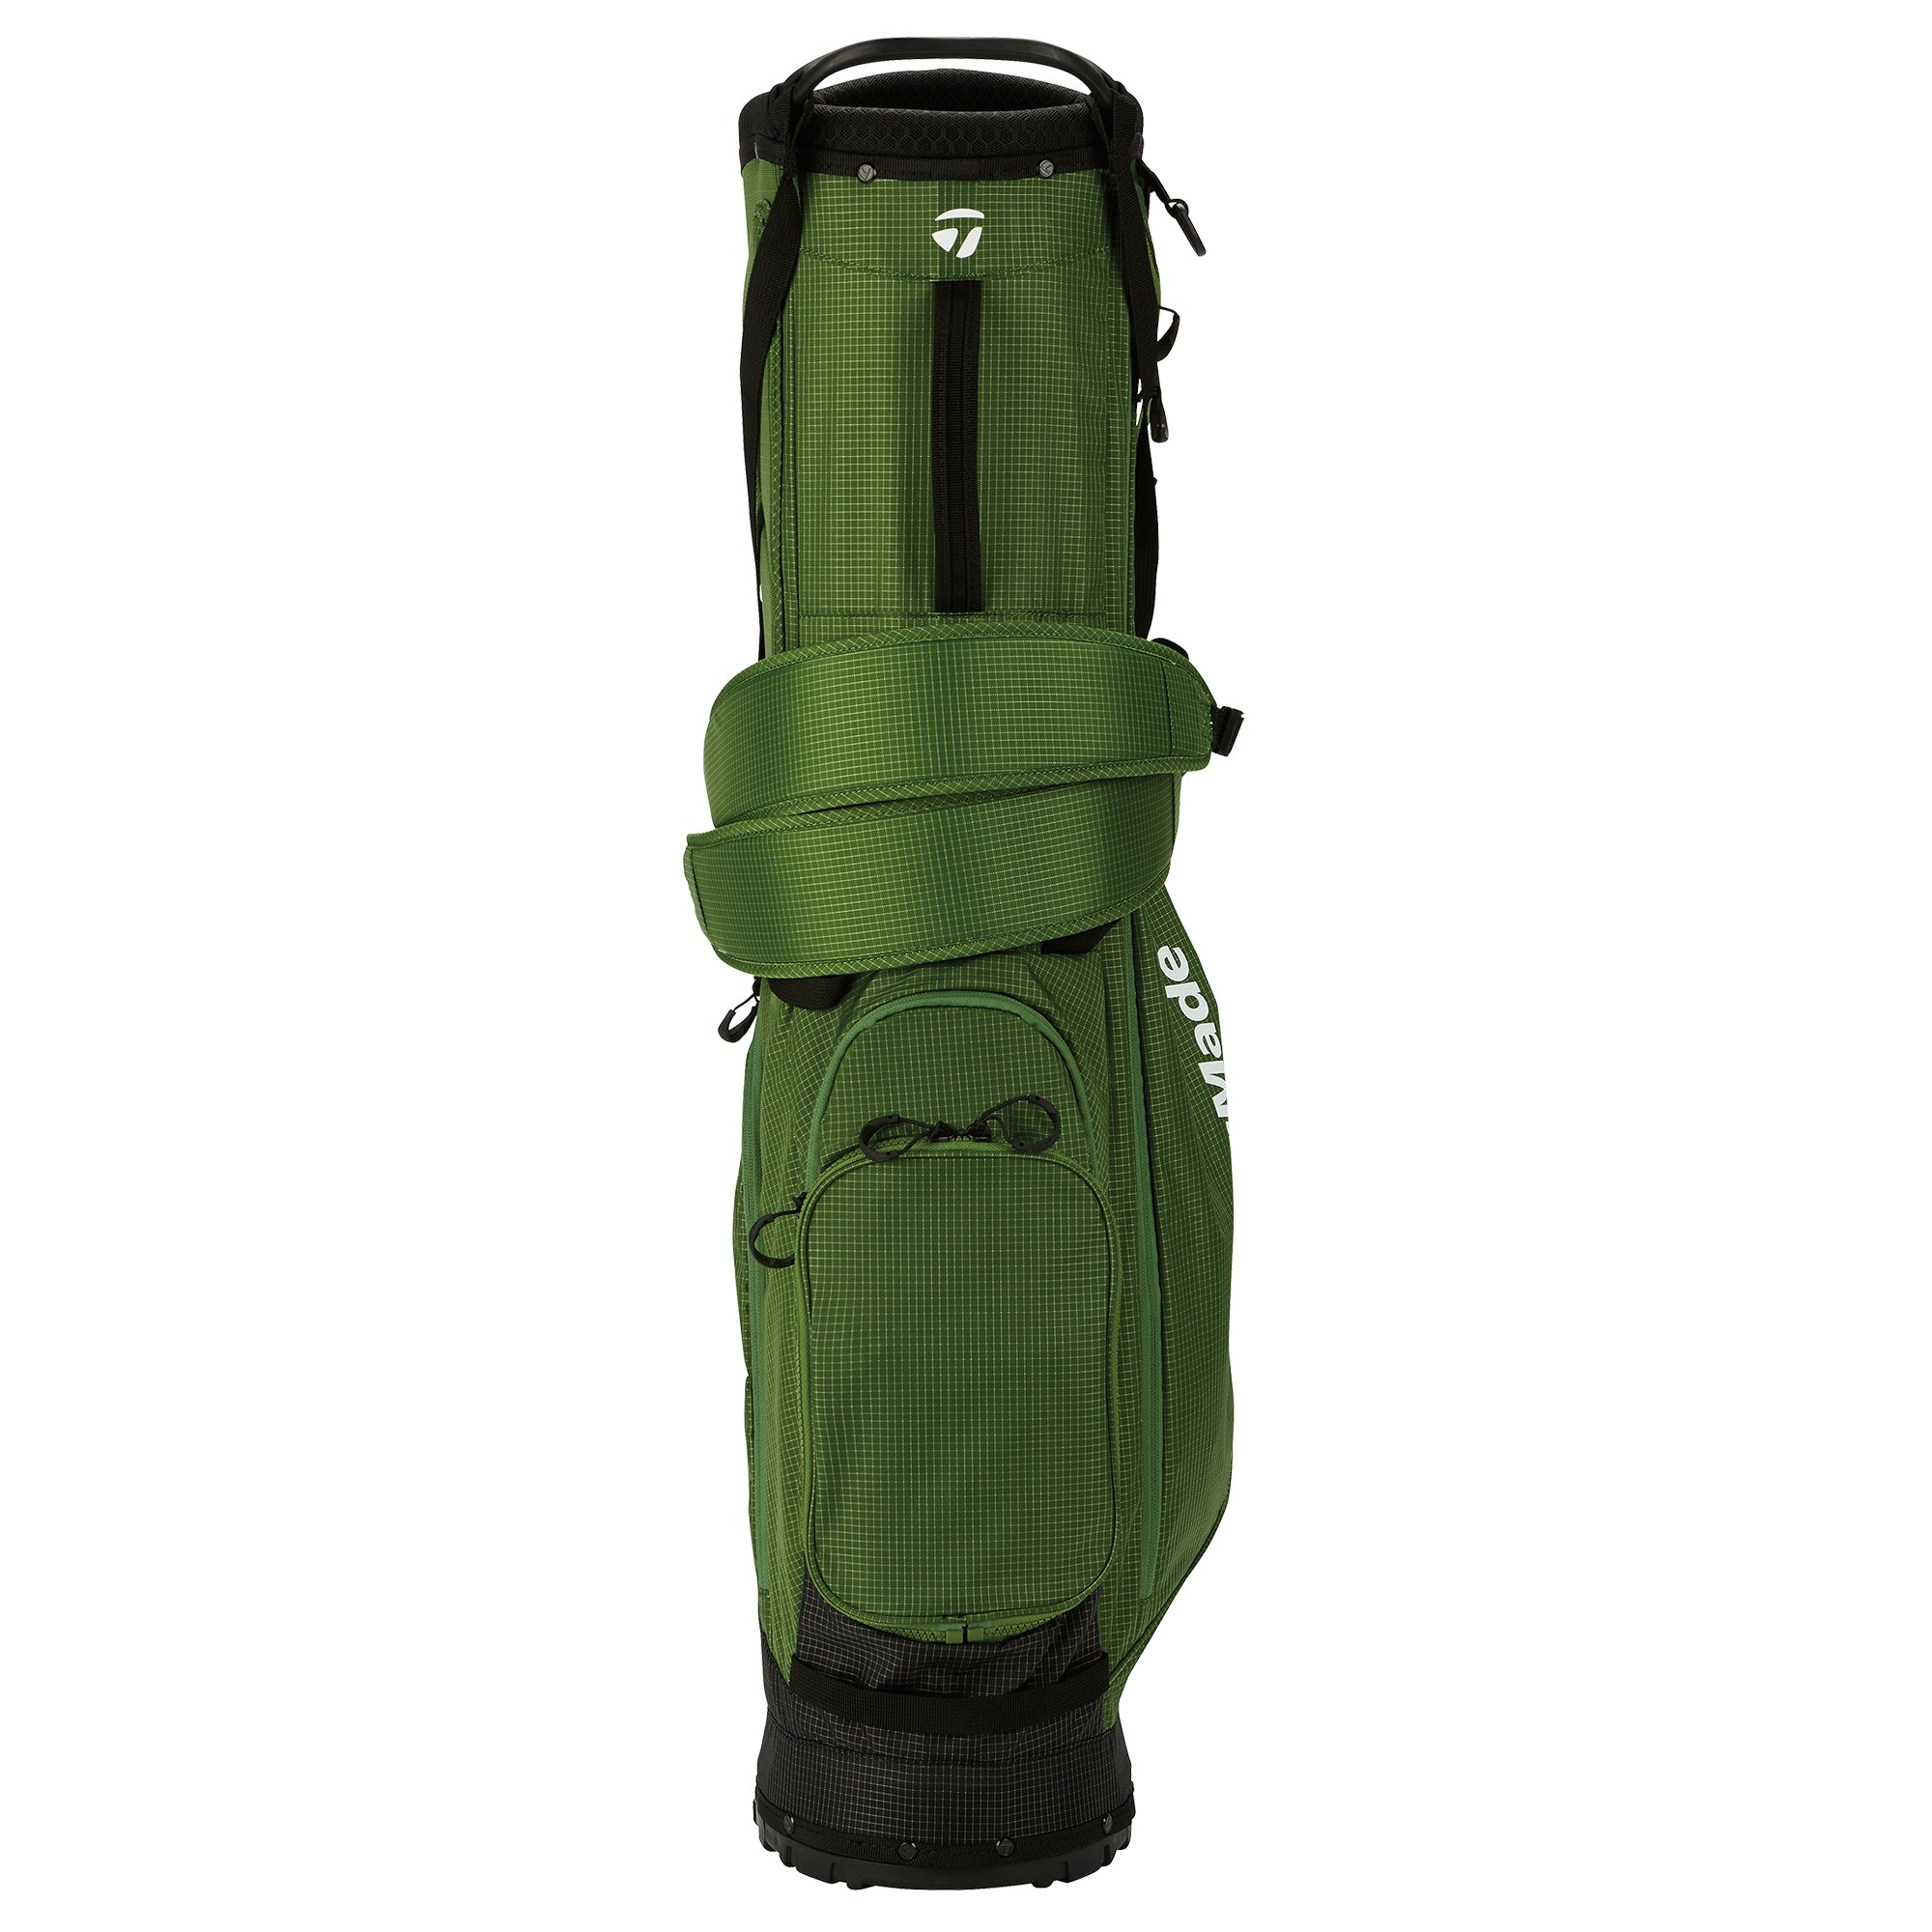 taylormade-flextech-superlite-stand-golf-bag-n26975-green